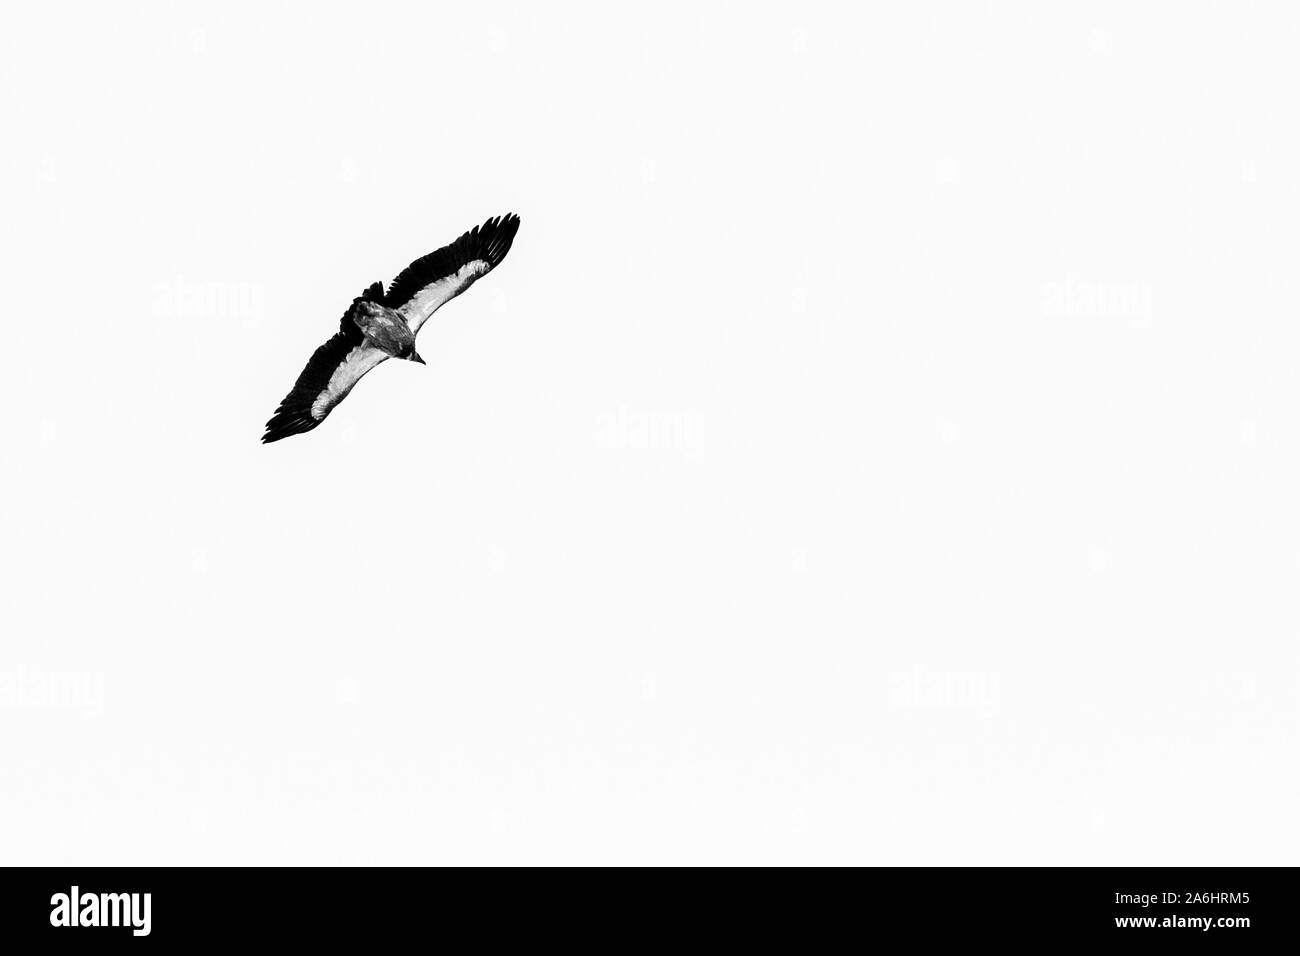 Grande aquila volare sopra le montagne, Himalaya, Nepal. Immagine in bianco e nero Foto Stock